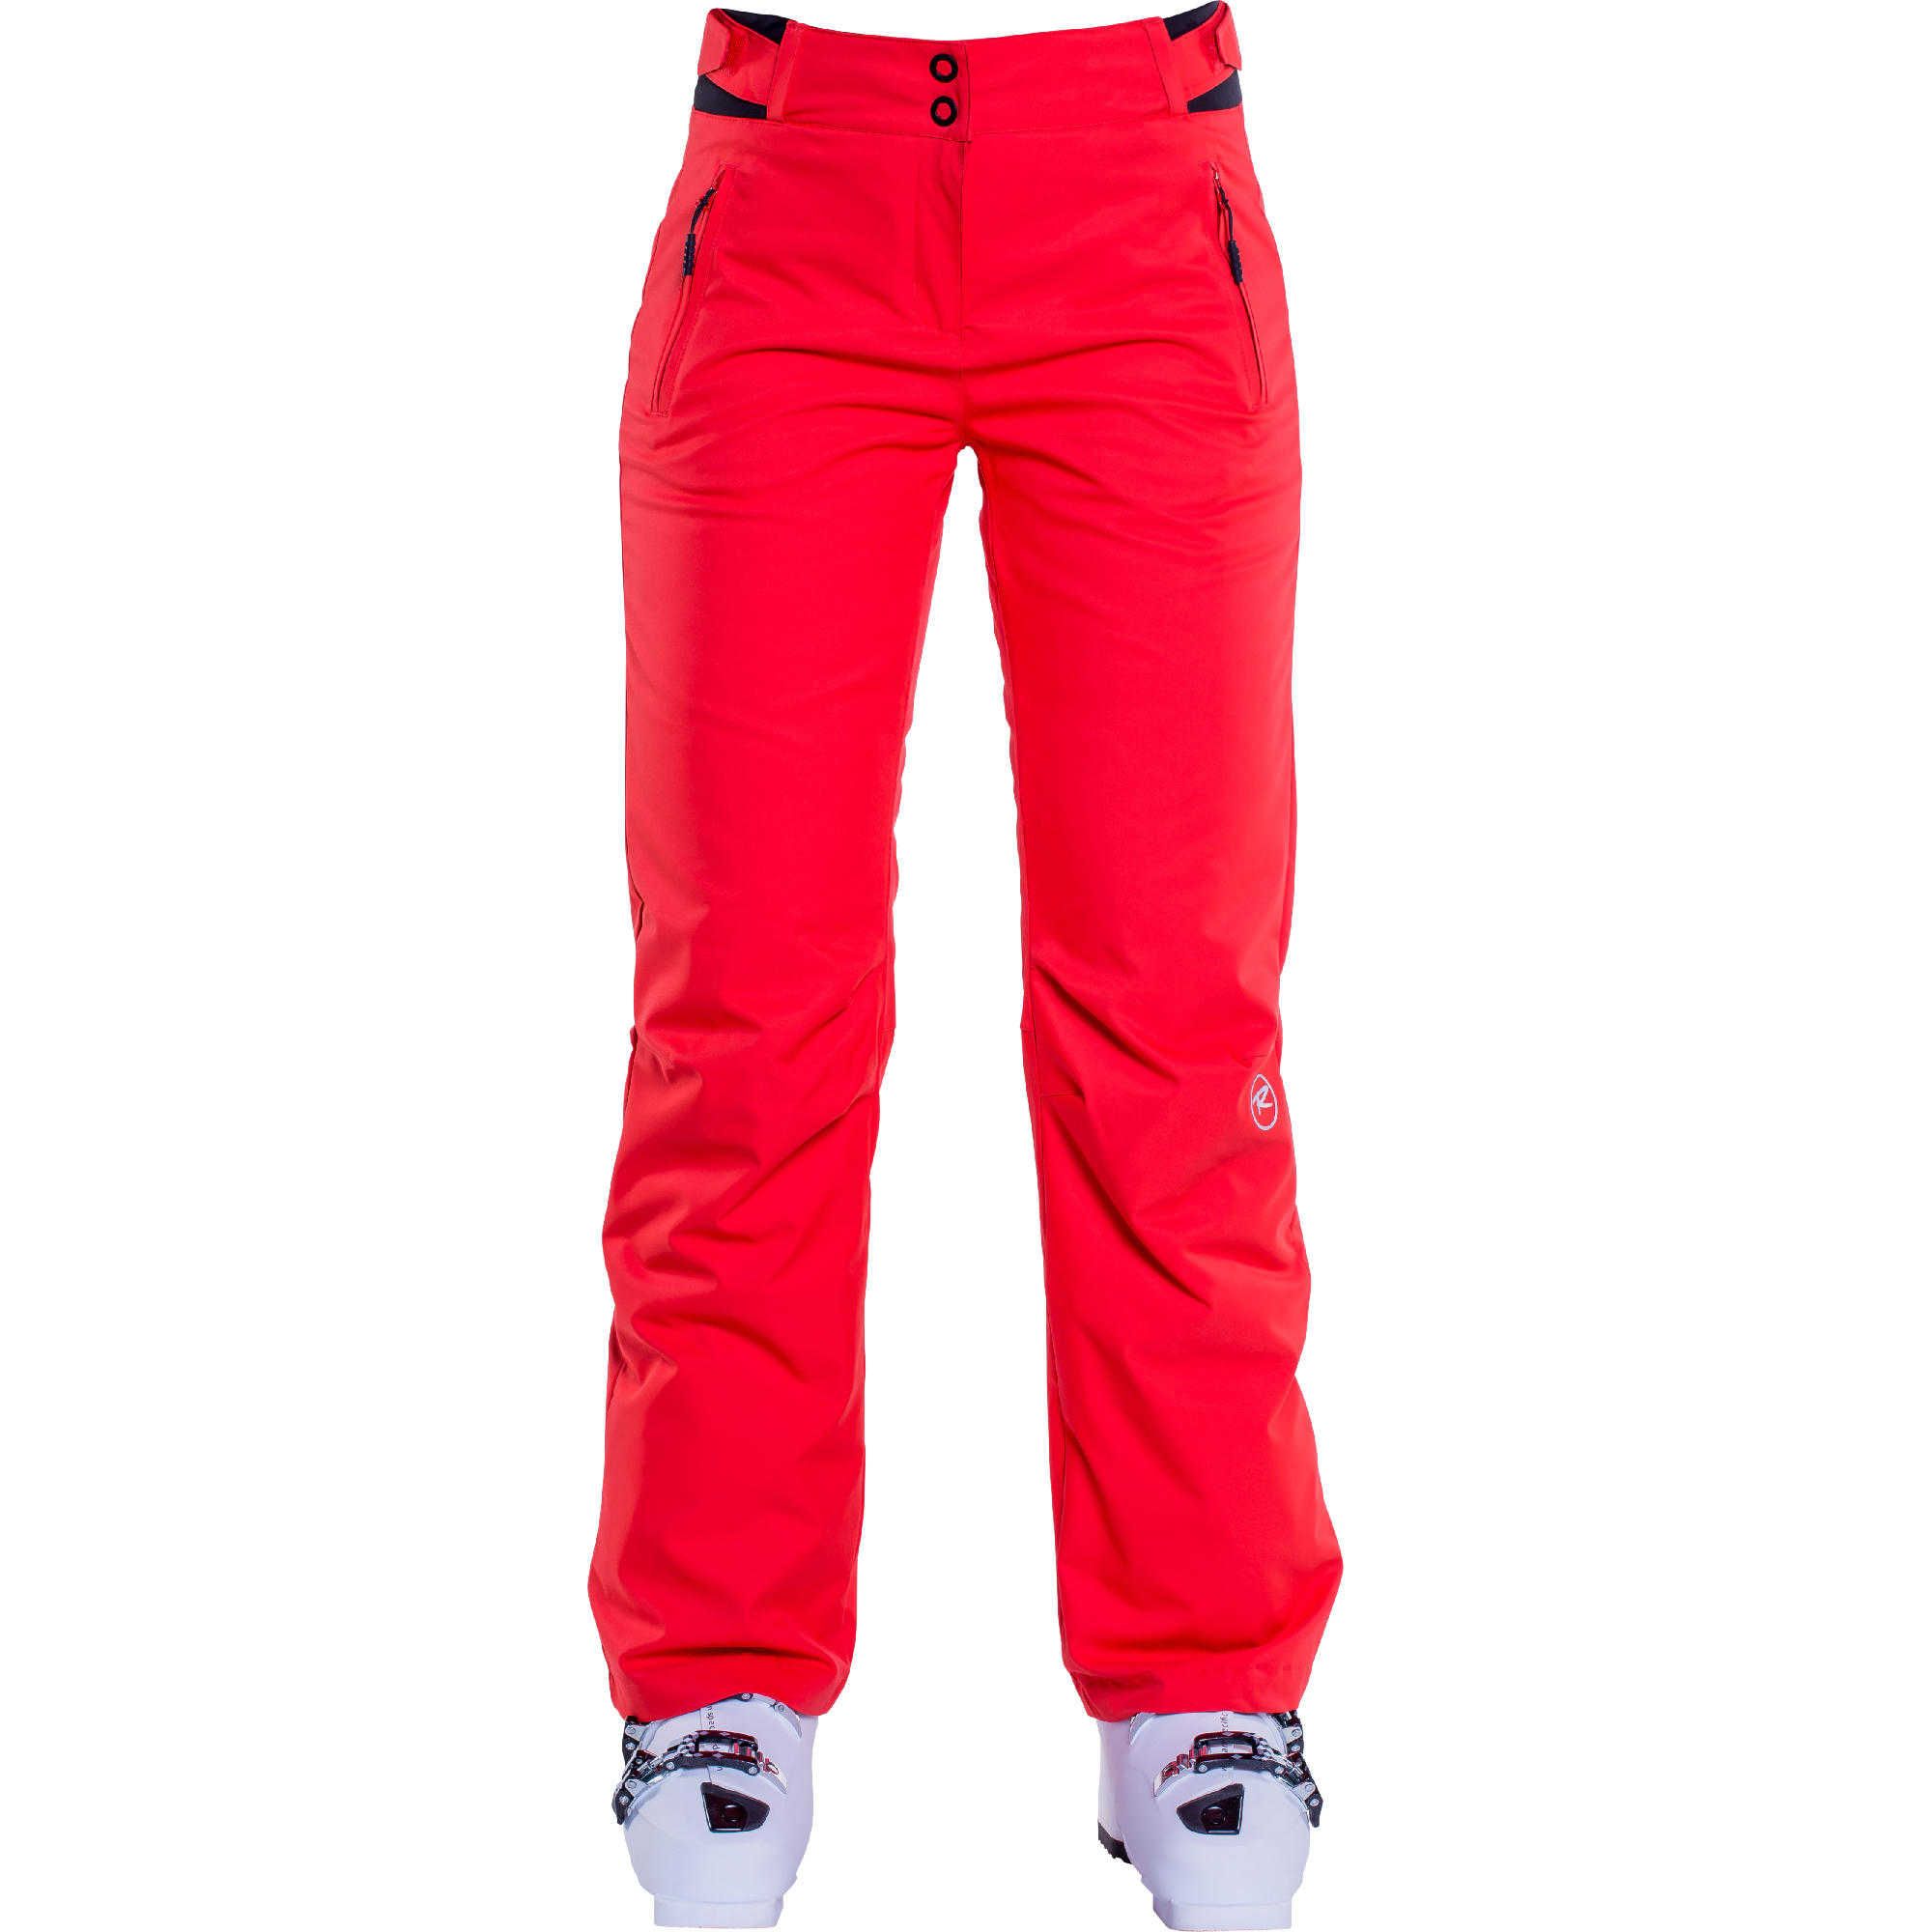 Pantalon ski femme W Moonrise Pant - Blaze Red